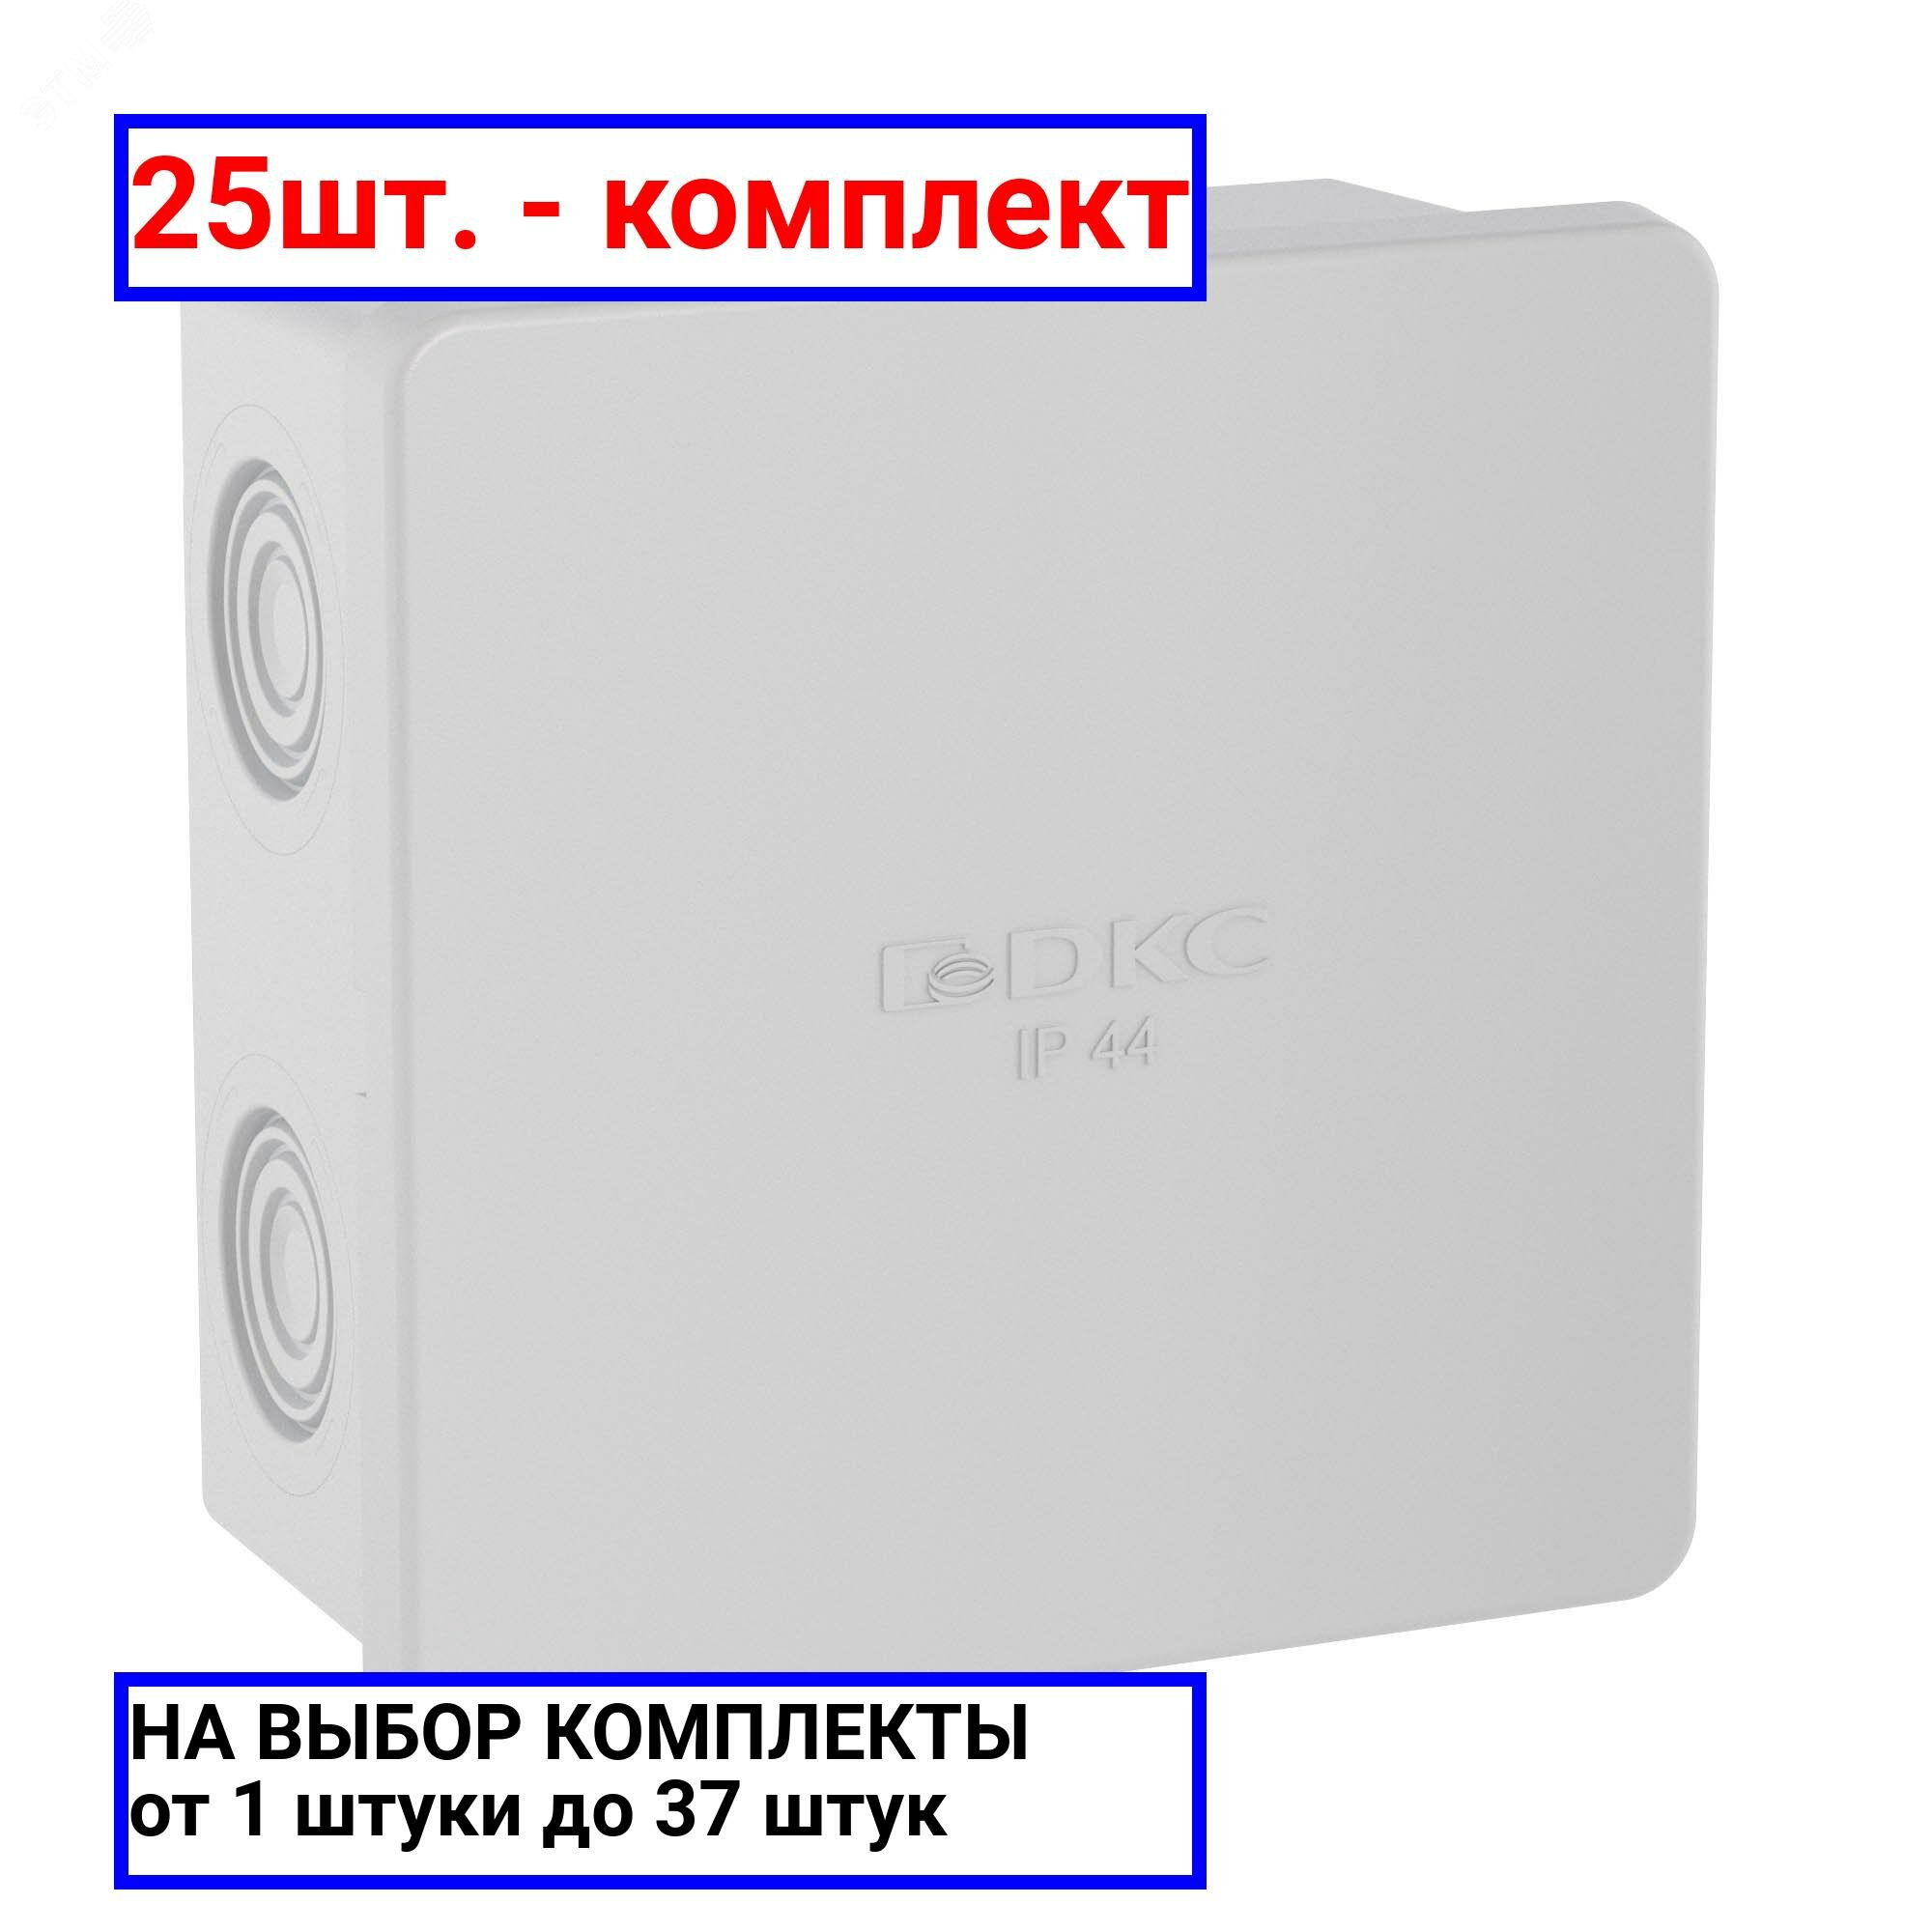 25шт. - Коробка распределительная 80х80х40мм IP44 с кабельными вводами / DKC; арт. 53700; оригинал / - комплект 25шт